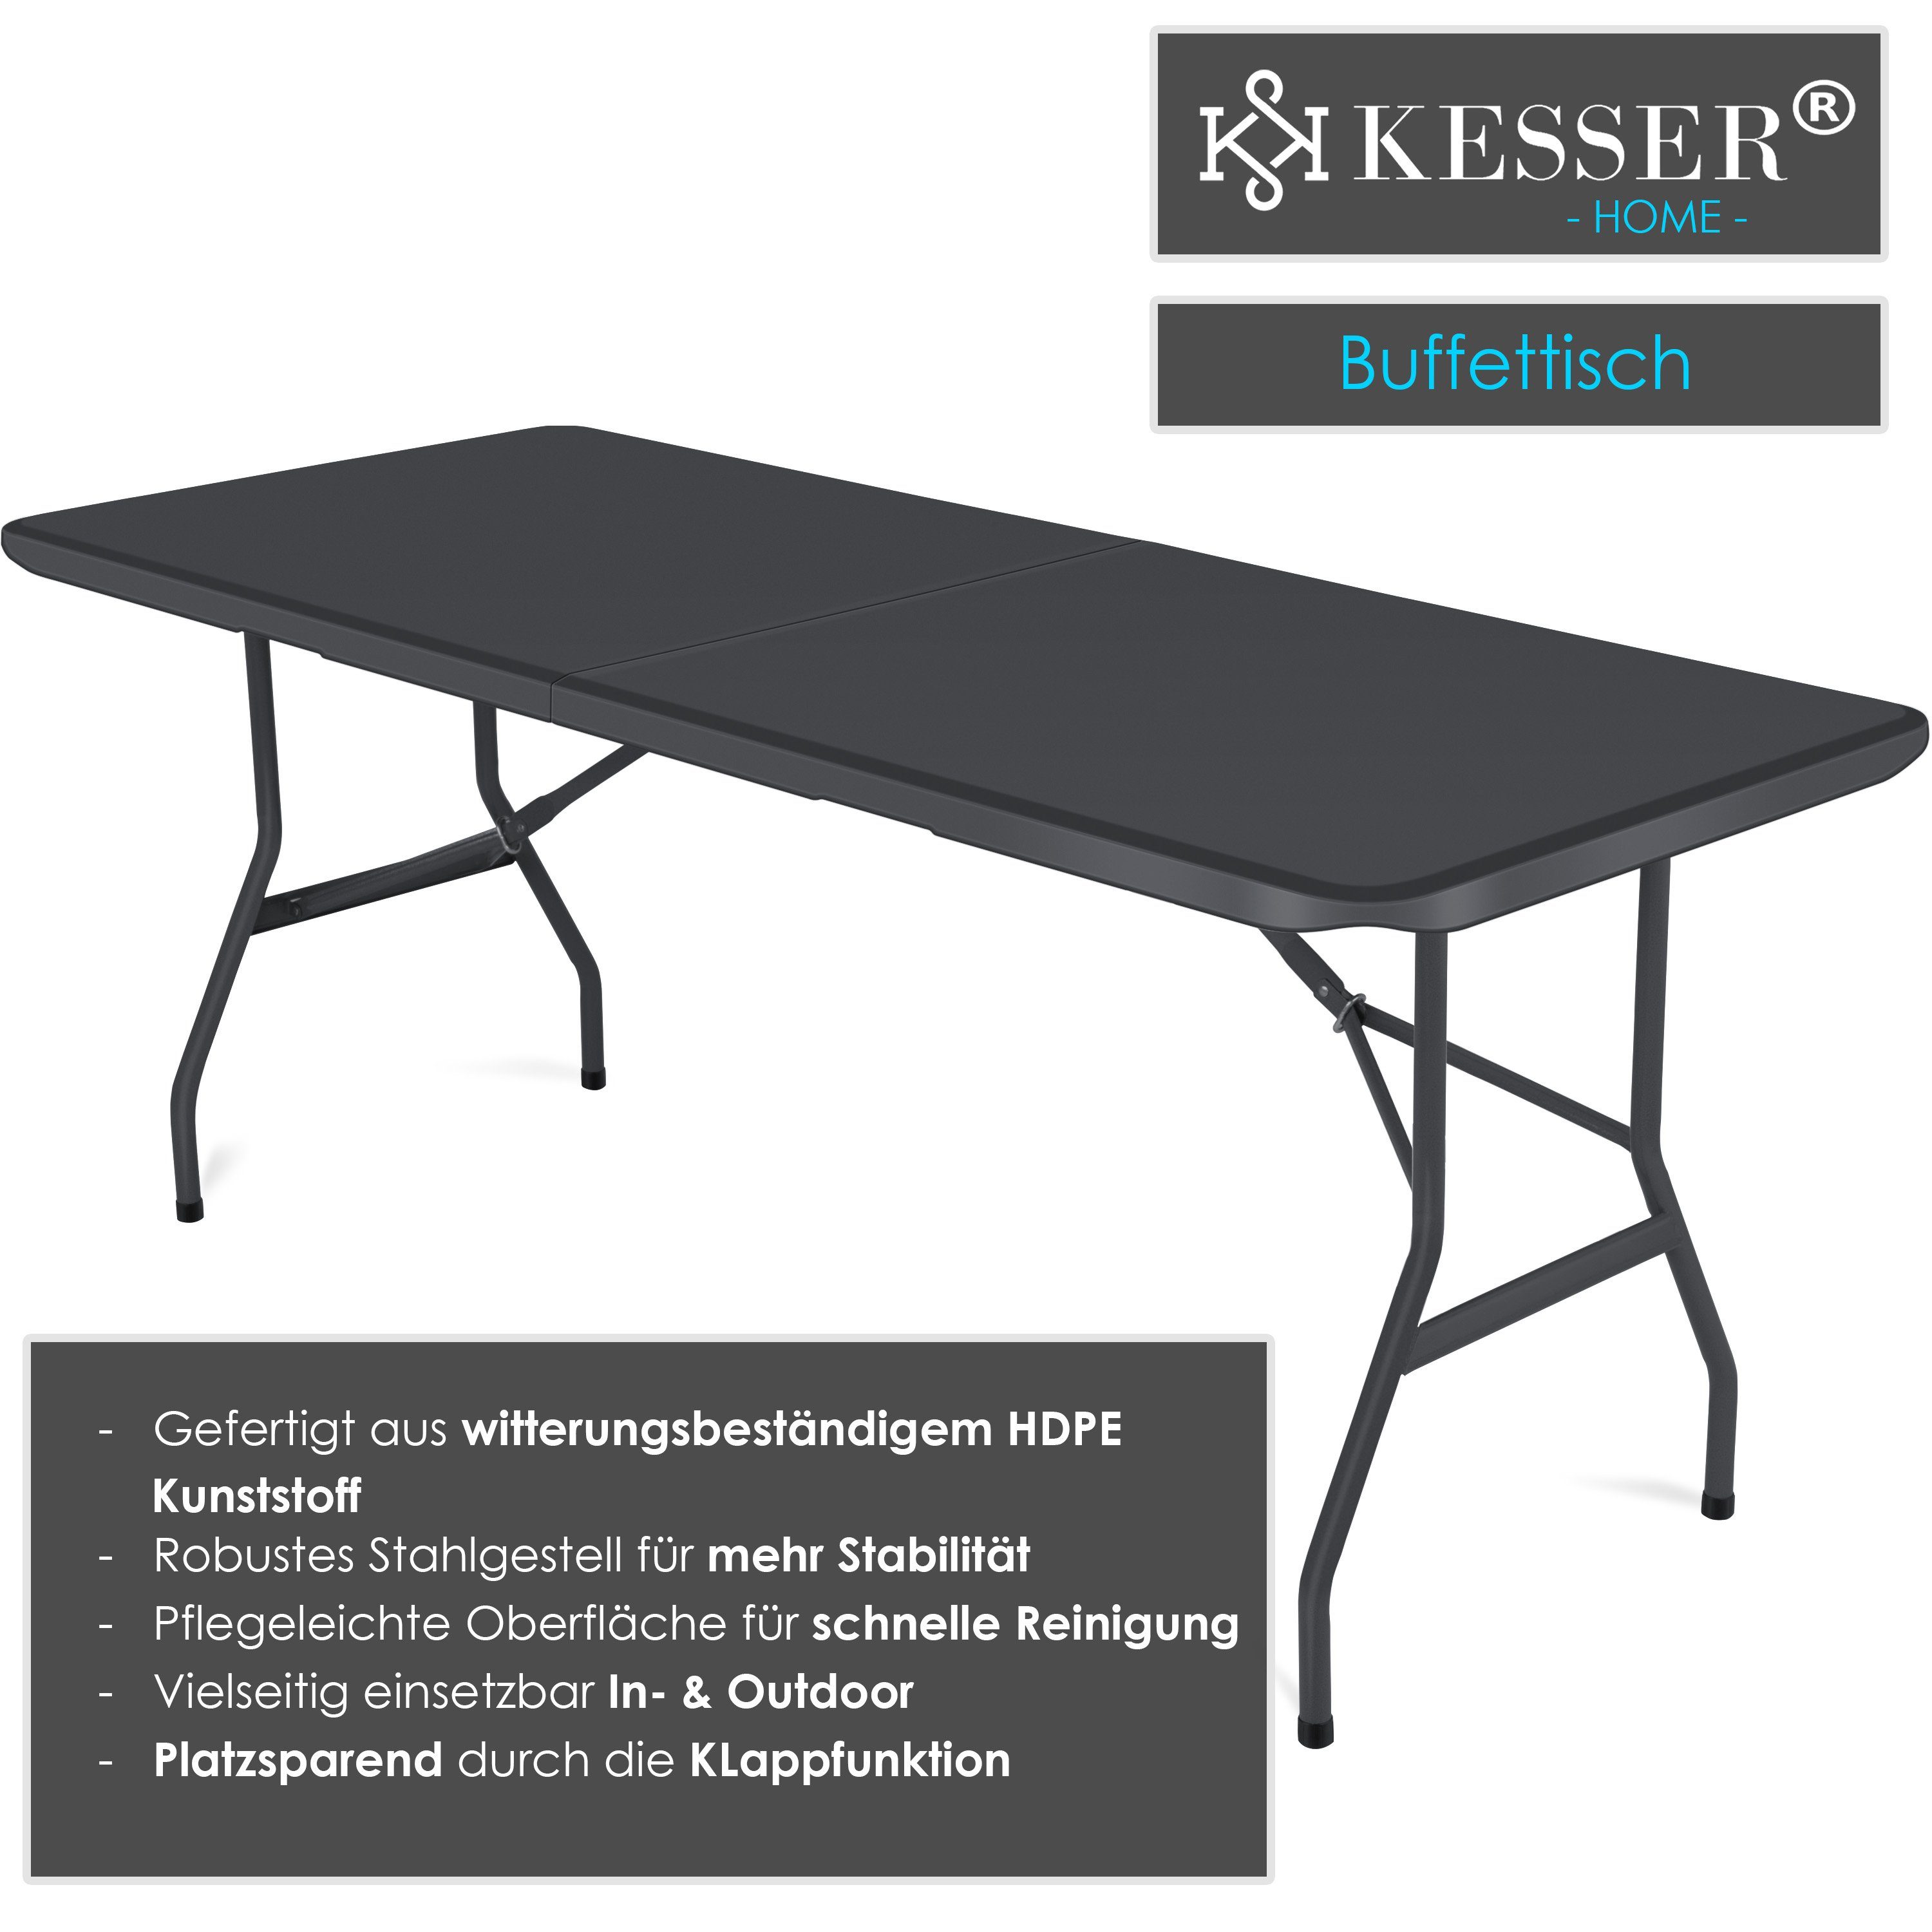 KESSER Tabletttisch, anthrazit cm 183x76 Campingtisch Kunststoff Tisch klappbar Buffettisch